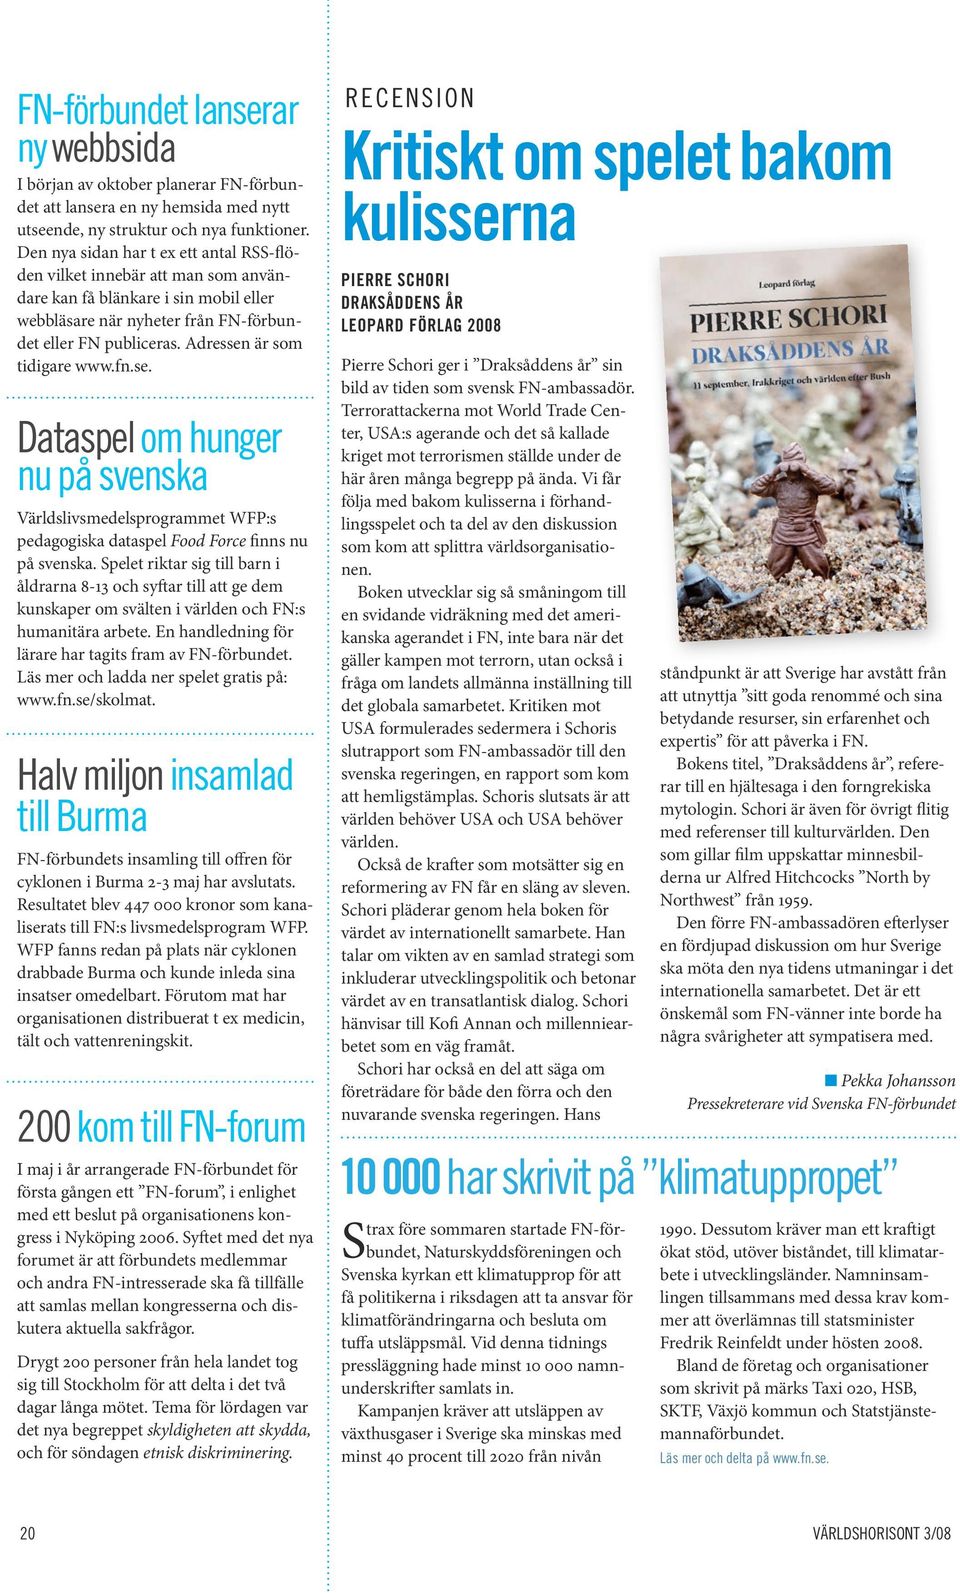 Adressen är som tidigare www.fn.se. Dataspel om hunger nu på svenska Världslivsmedelsprogrammet WFP:s pedagogiska dataspel Food Force finns nu på svenska.